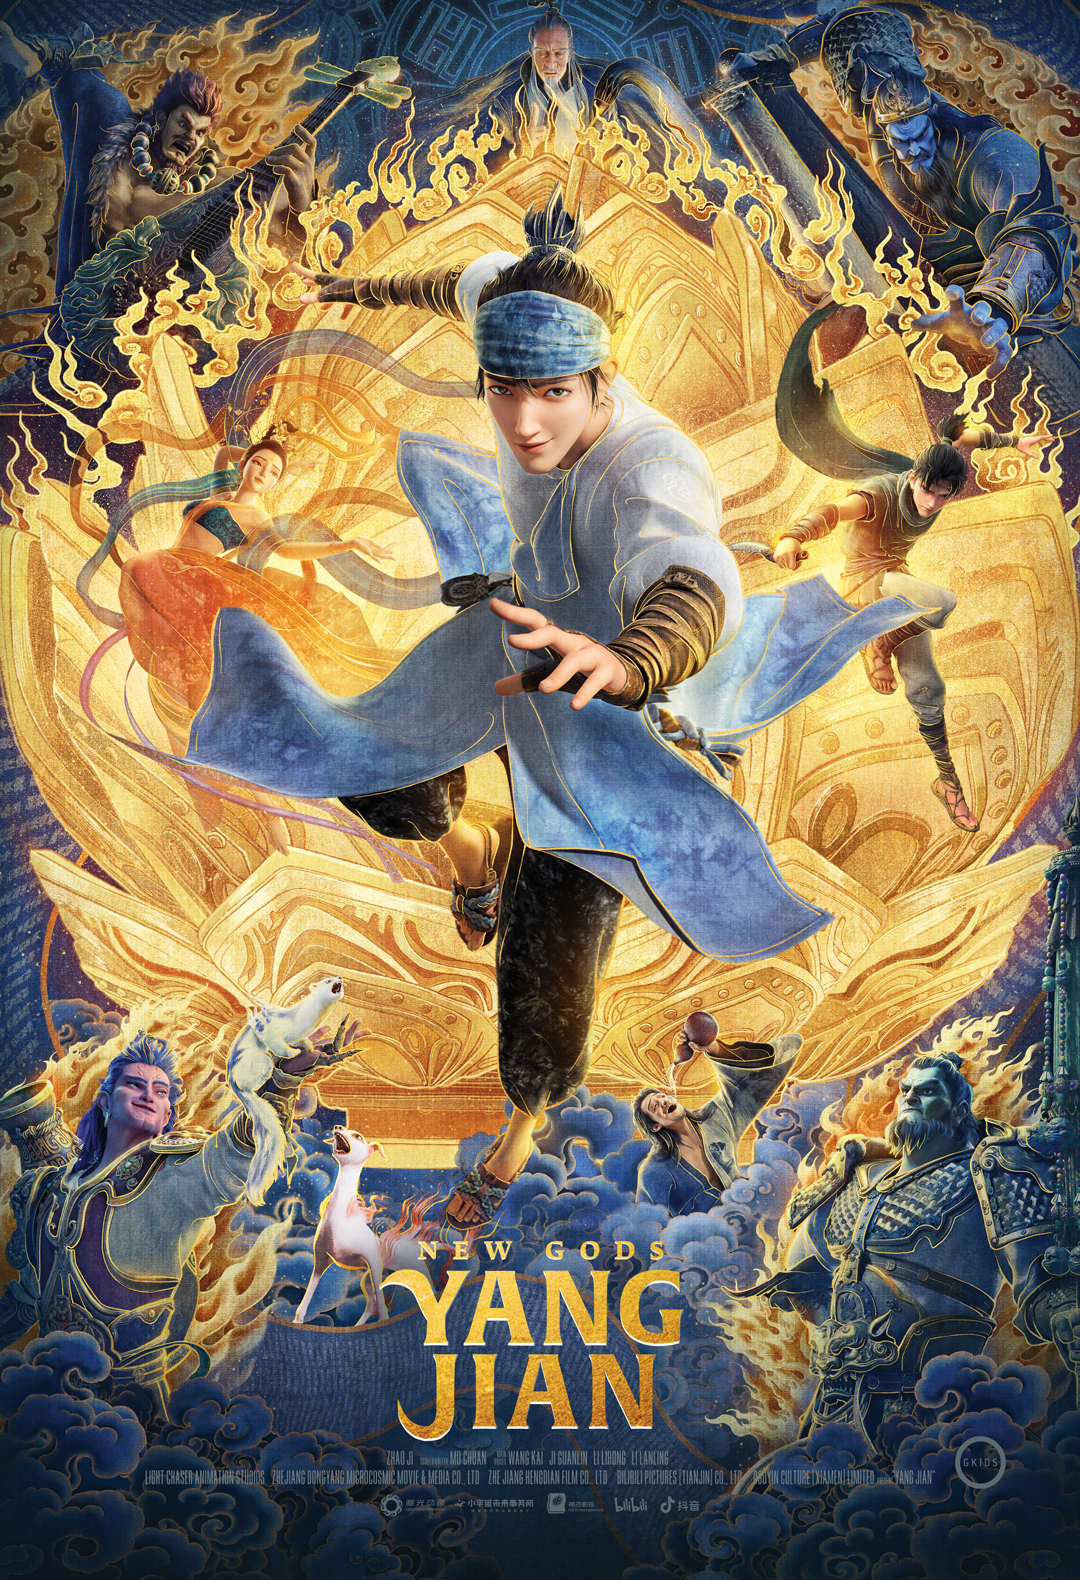 Image New Gods: Yang Jian